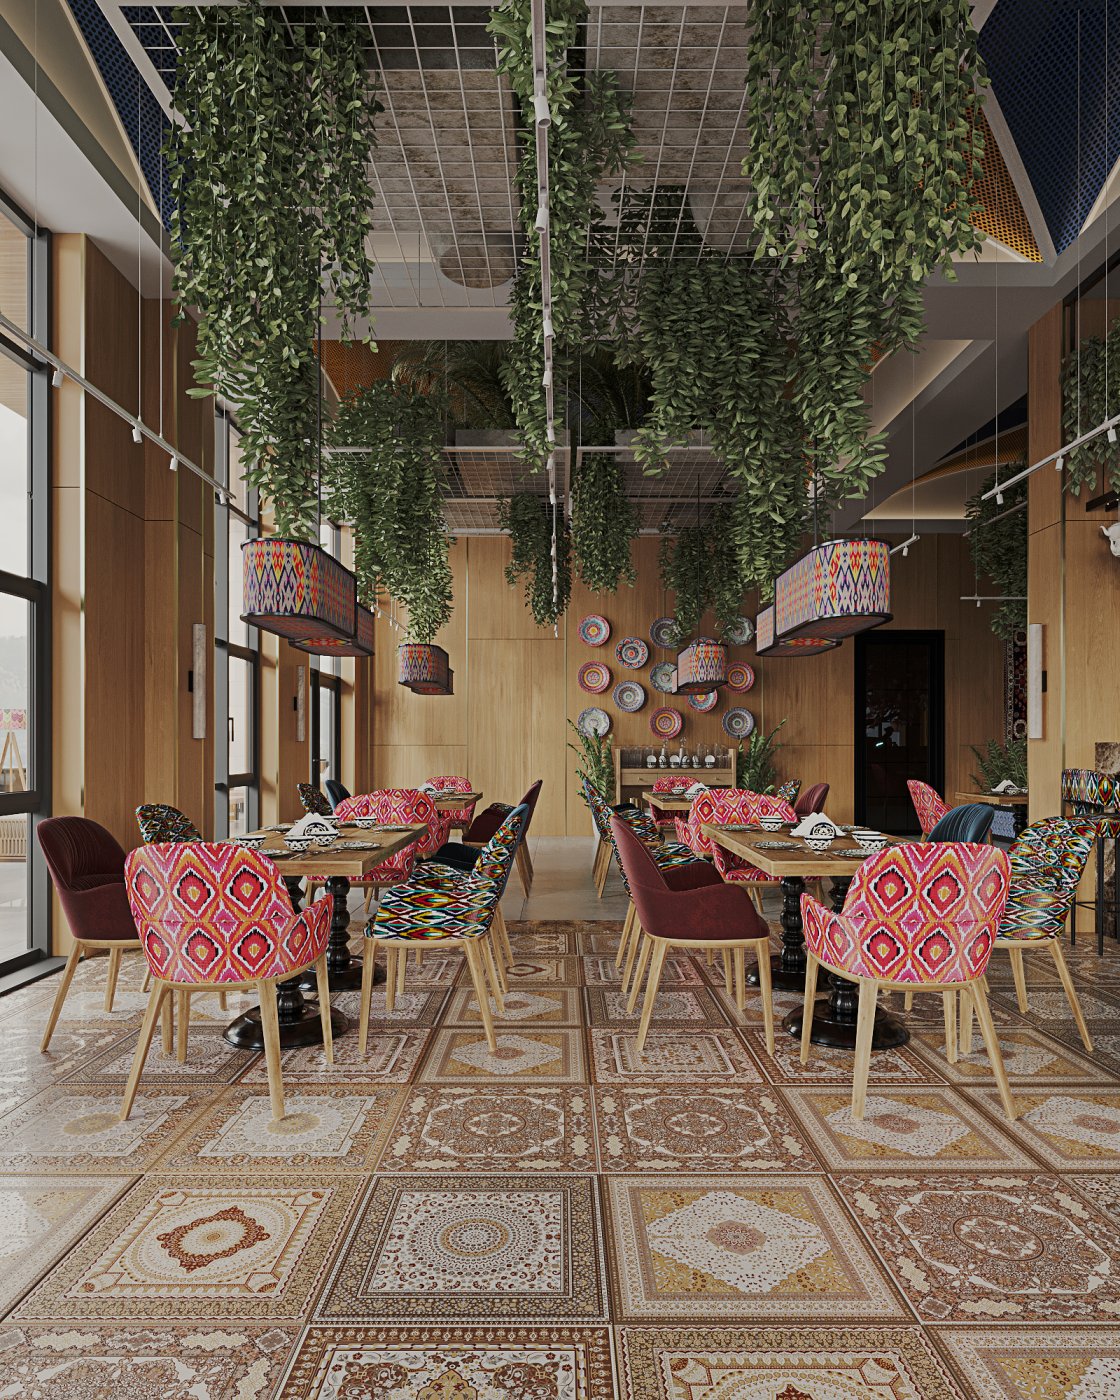 Modern interior of the Oriental cuisine restaurant